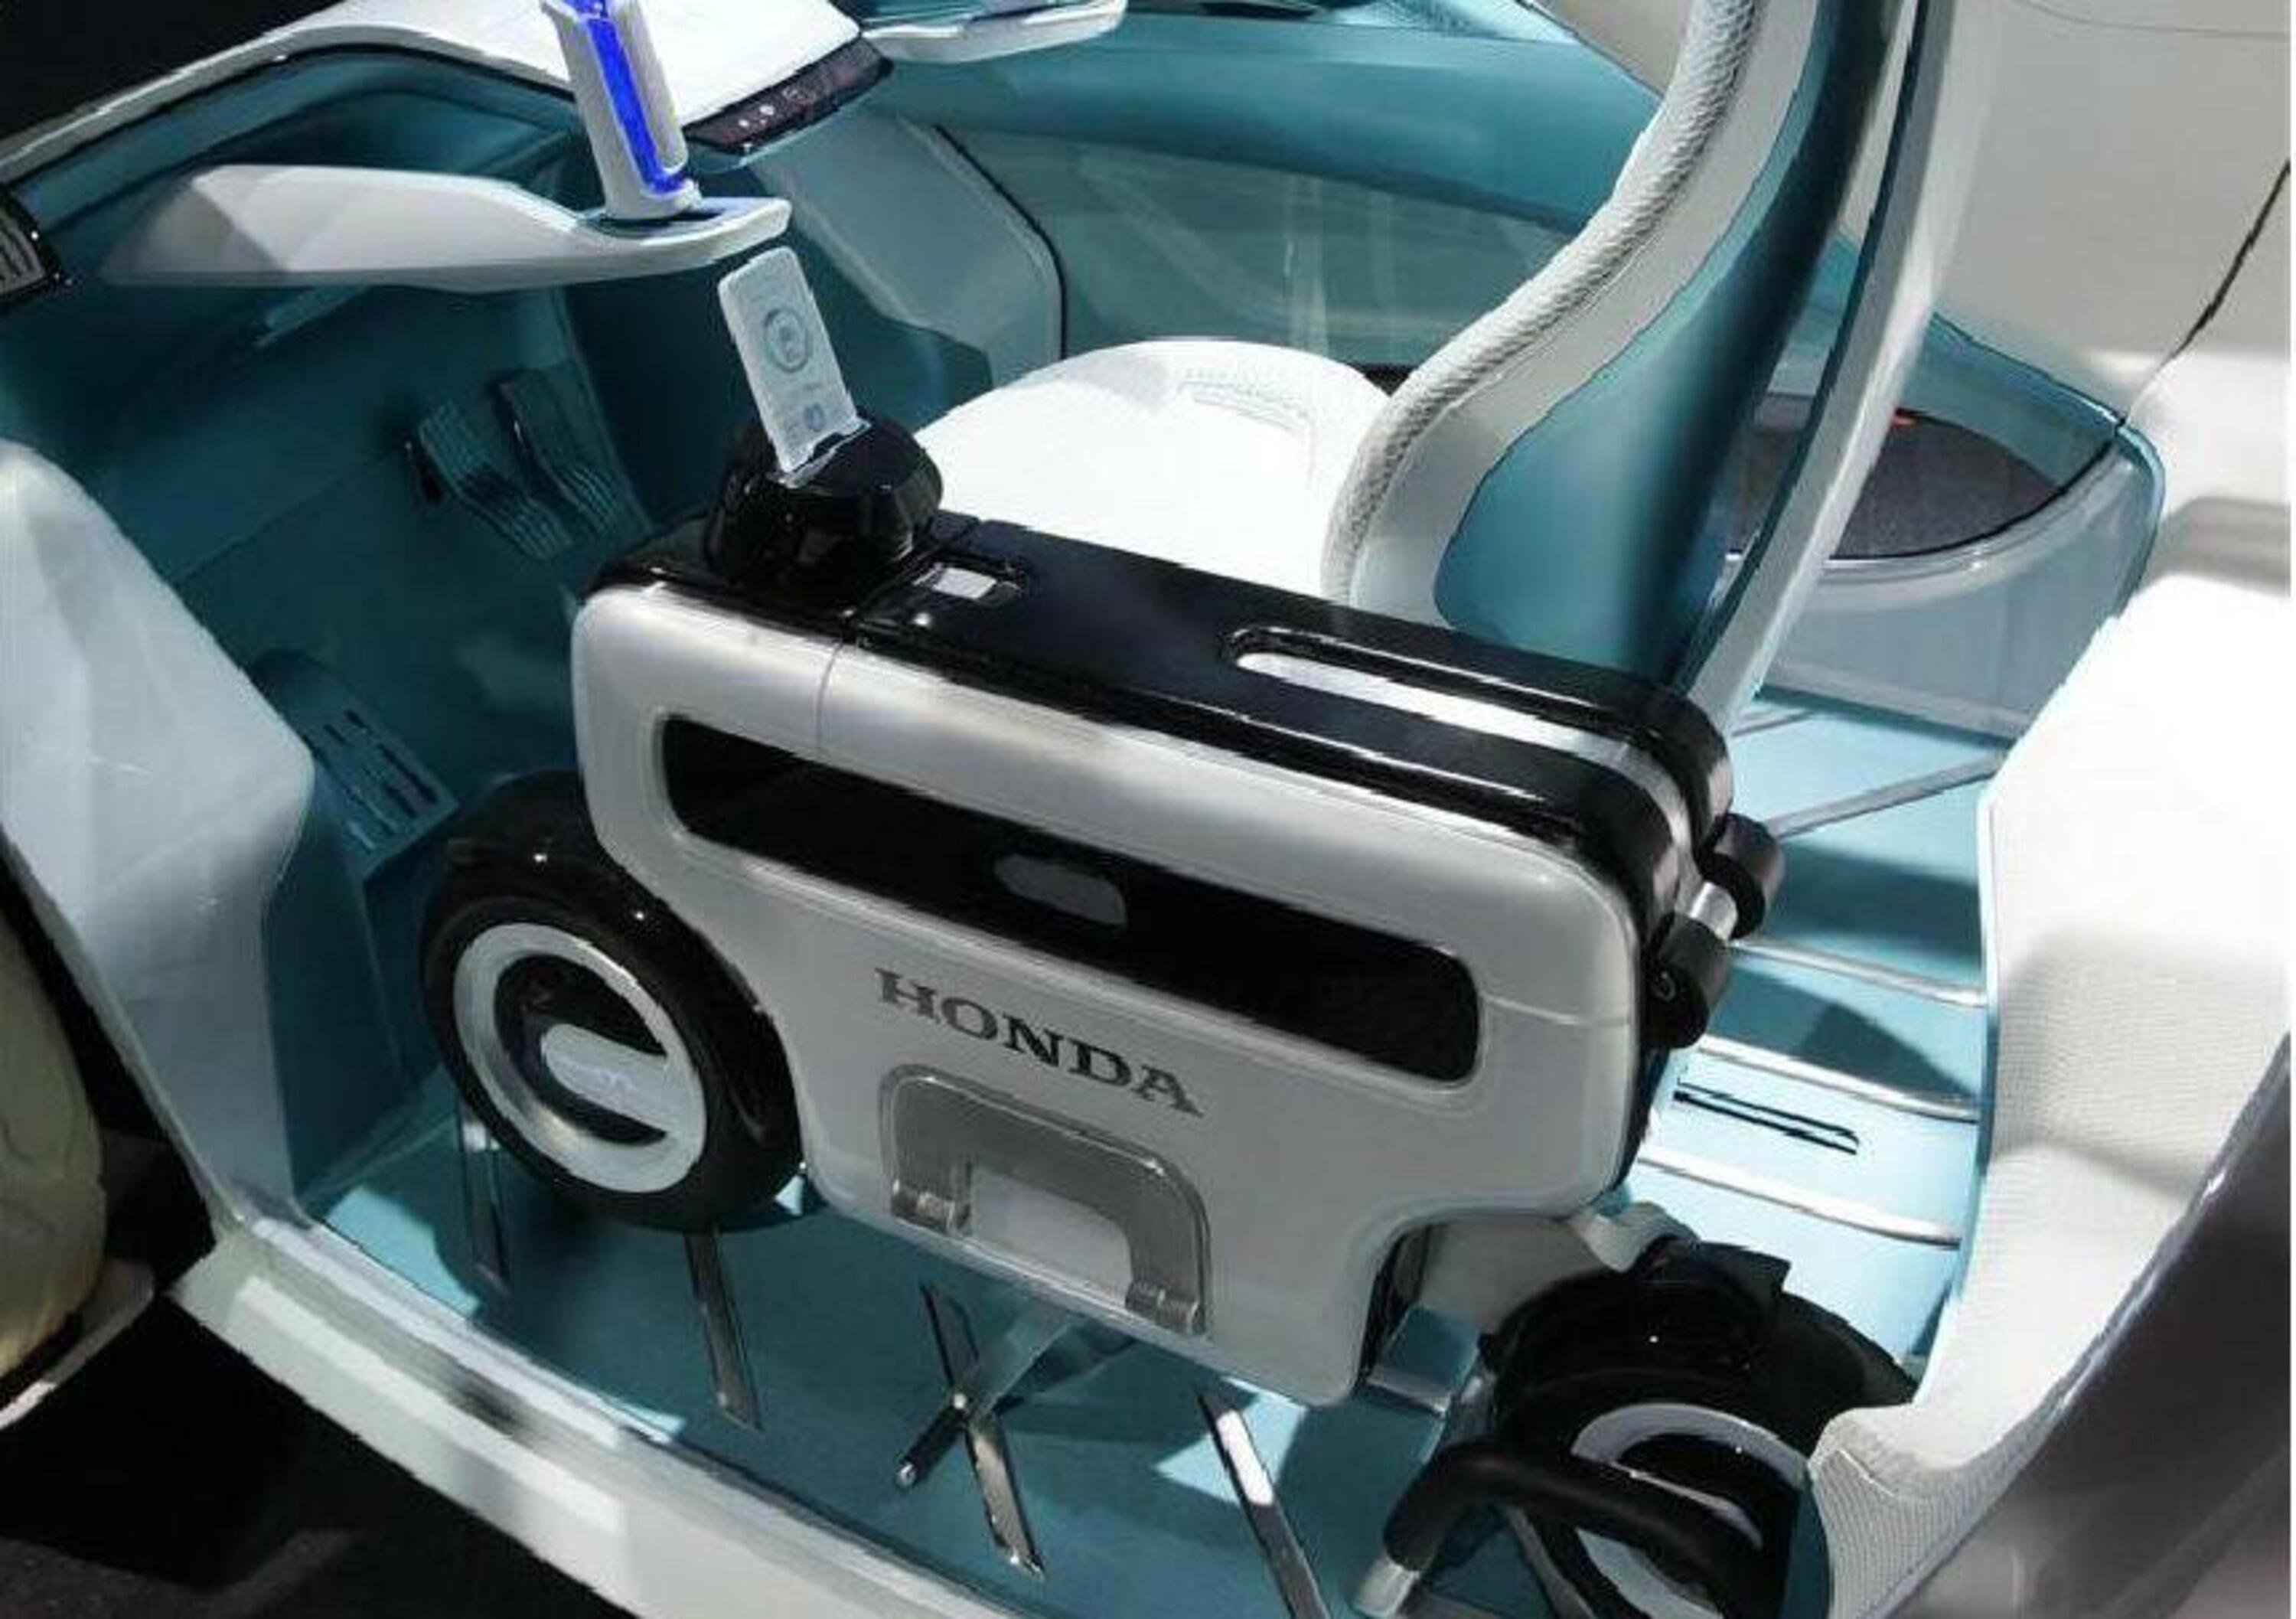 Honda registra Motocompacto. E&#039; il ritorno del motorino pieghevole?